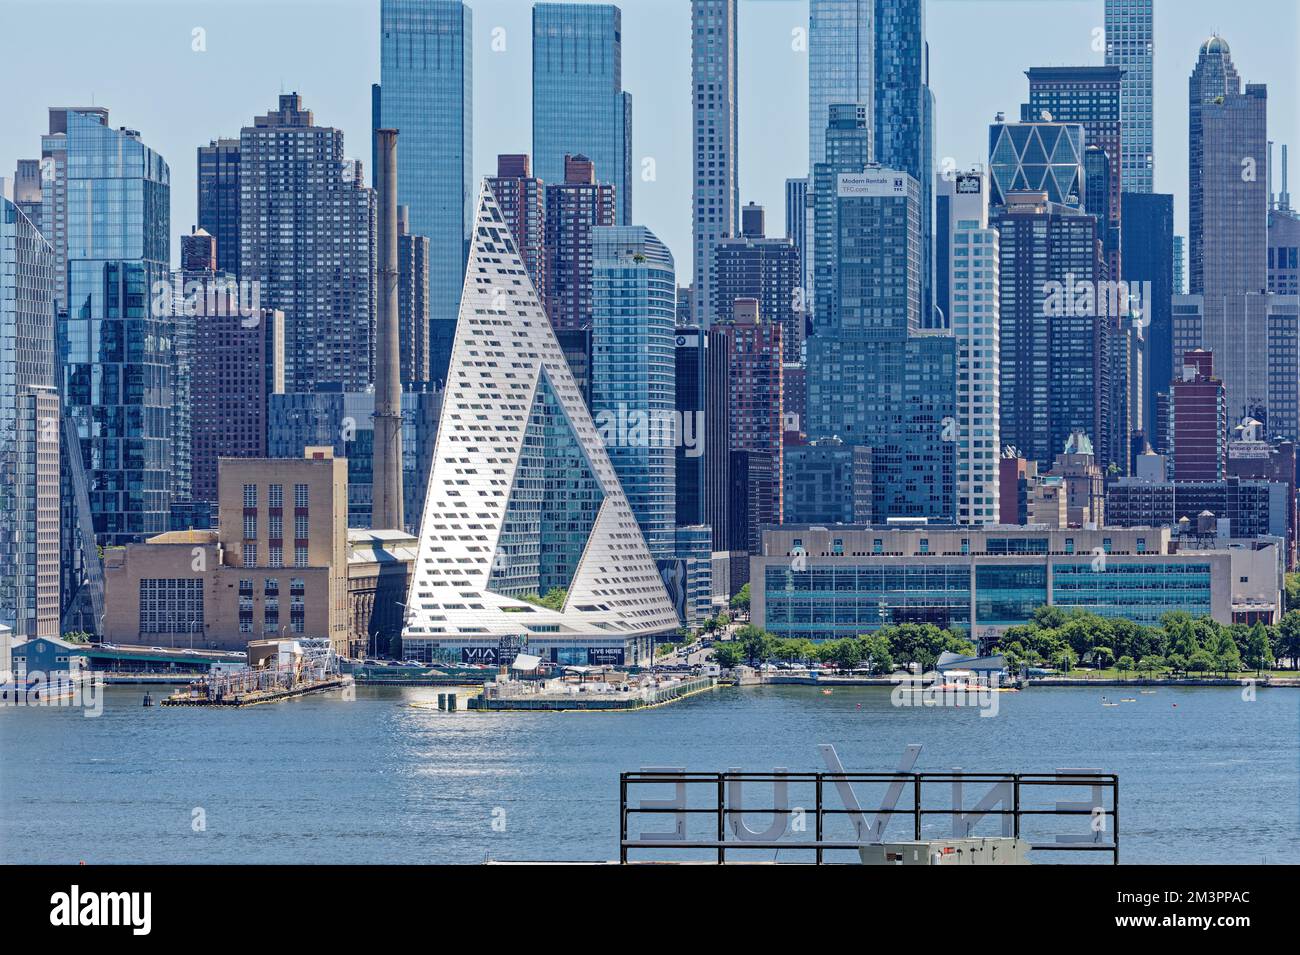 DIE VIA 57 West ist eine 34-stöckige Wohnanlage, die von der Bjarke Ingels Group (BIG) entworfen wurde. Die hohle Tetraeder-Form ist einzigartig in New York. Stockfoto